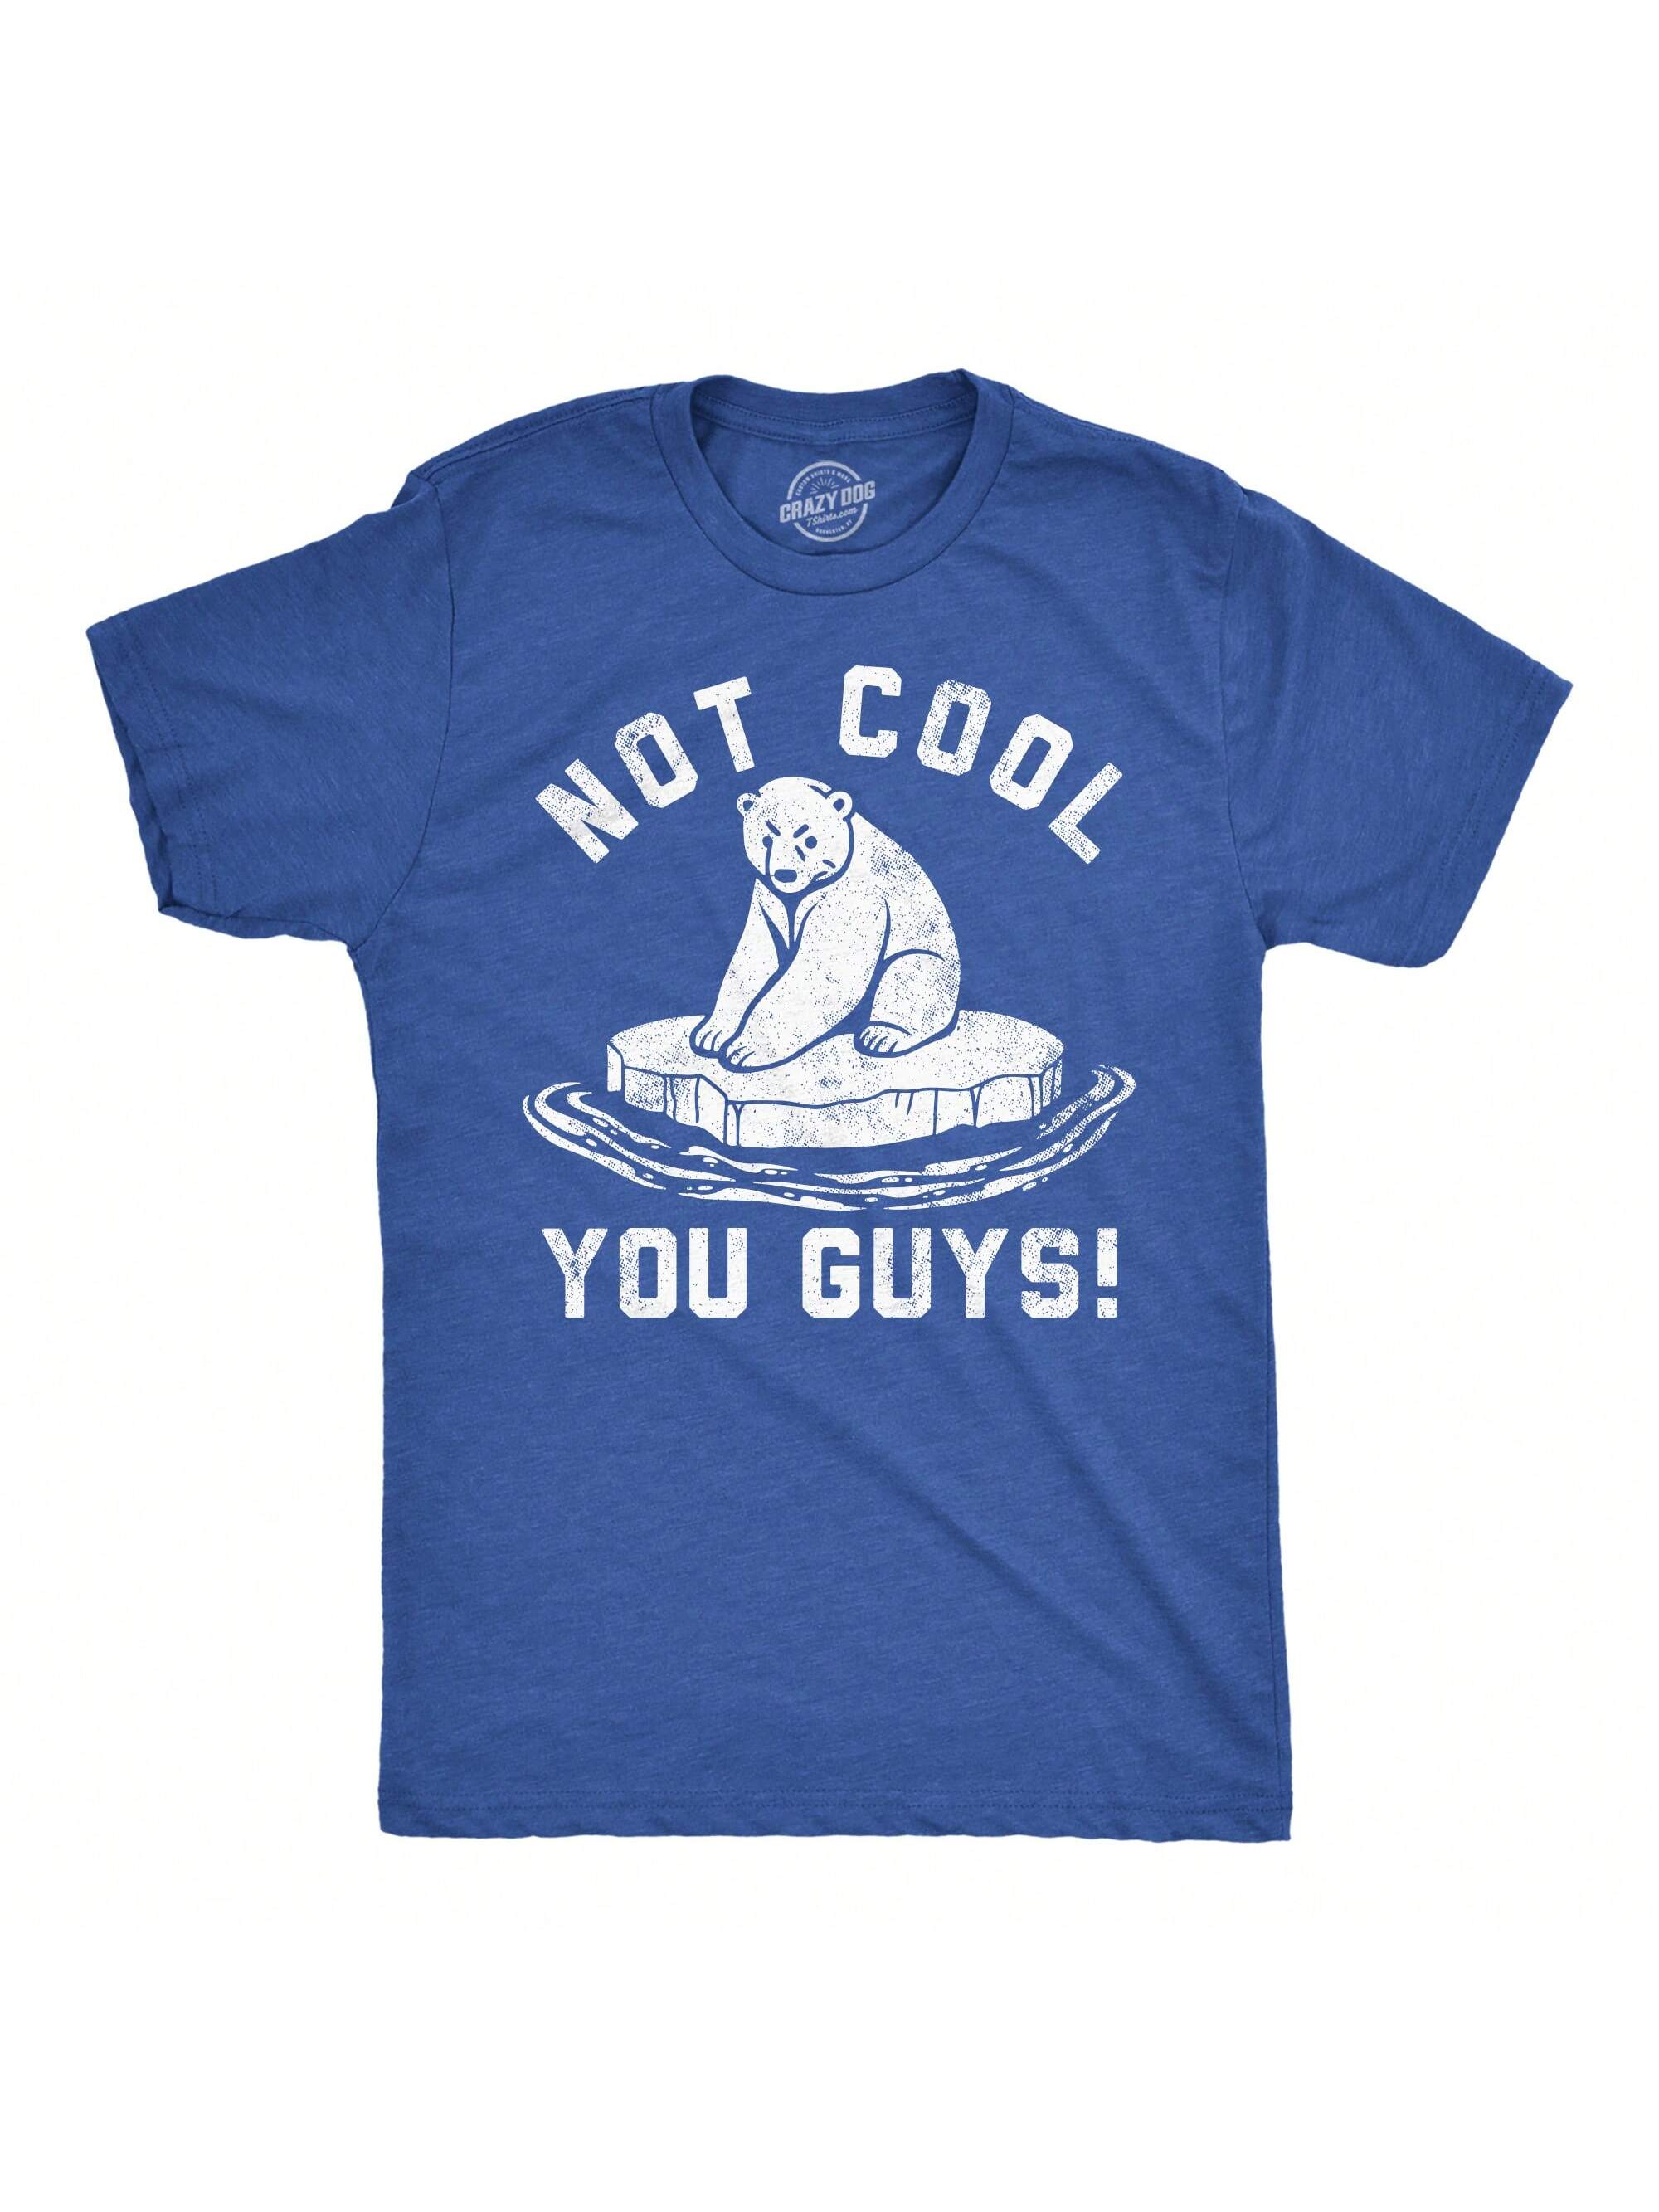 Мужские забавные футболки Not Cool You Guys Саркастическая футболка с белым медведем для парней (Heather Royal — Not Cool You Guys)